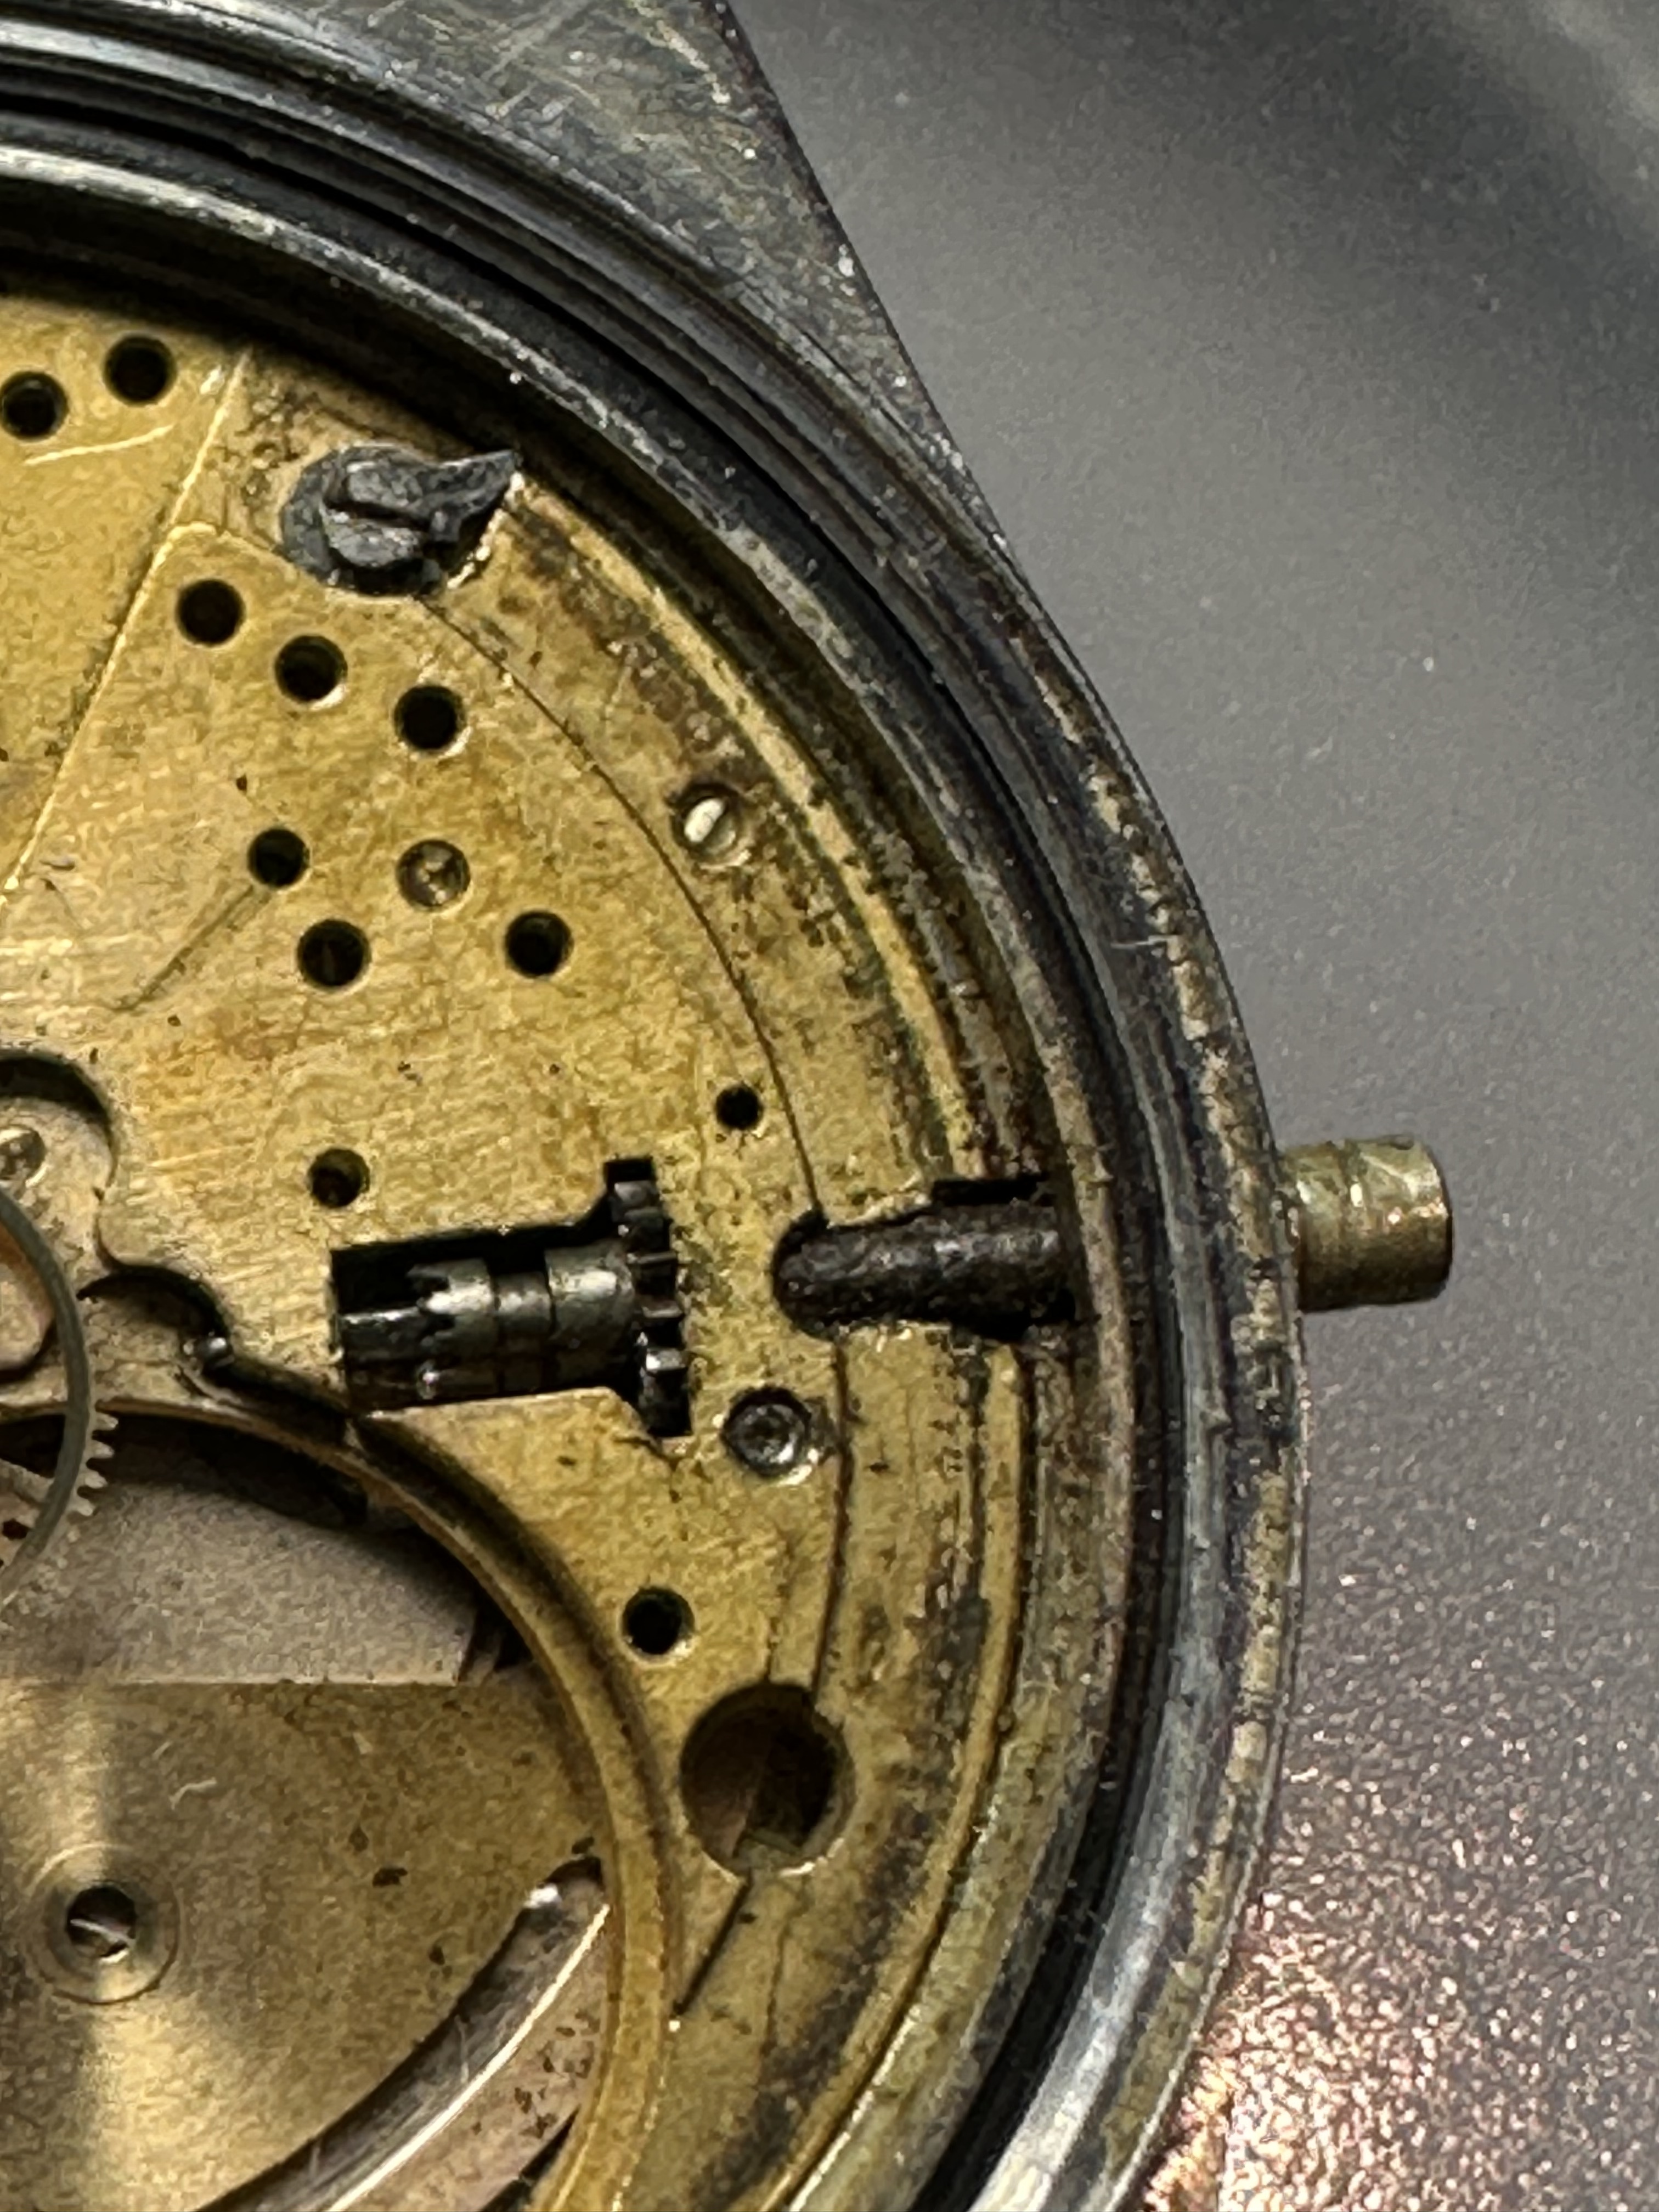 onderhoud Vakman abces Stift kroon afgebroken uurwerk vast in horloge - Techniek & Reviews -  Horlogeforum.nl - het forum voor liefhebbers van horloges